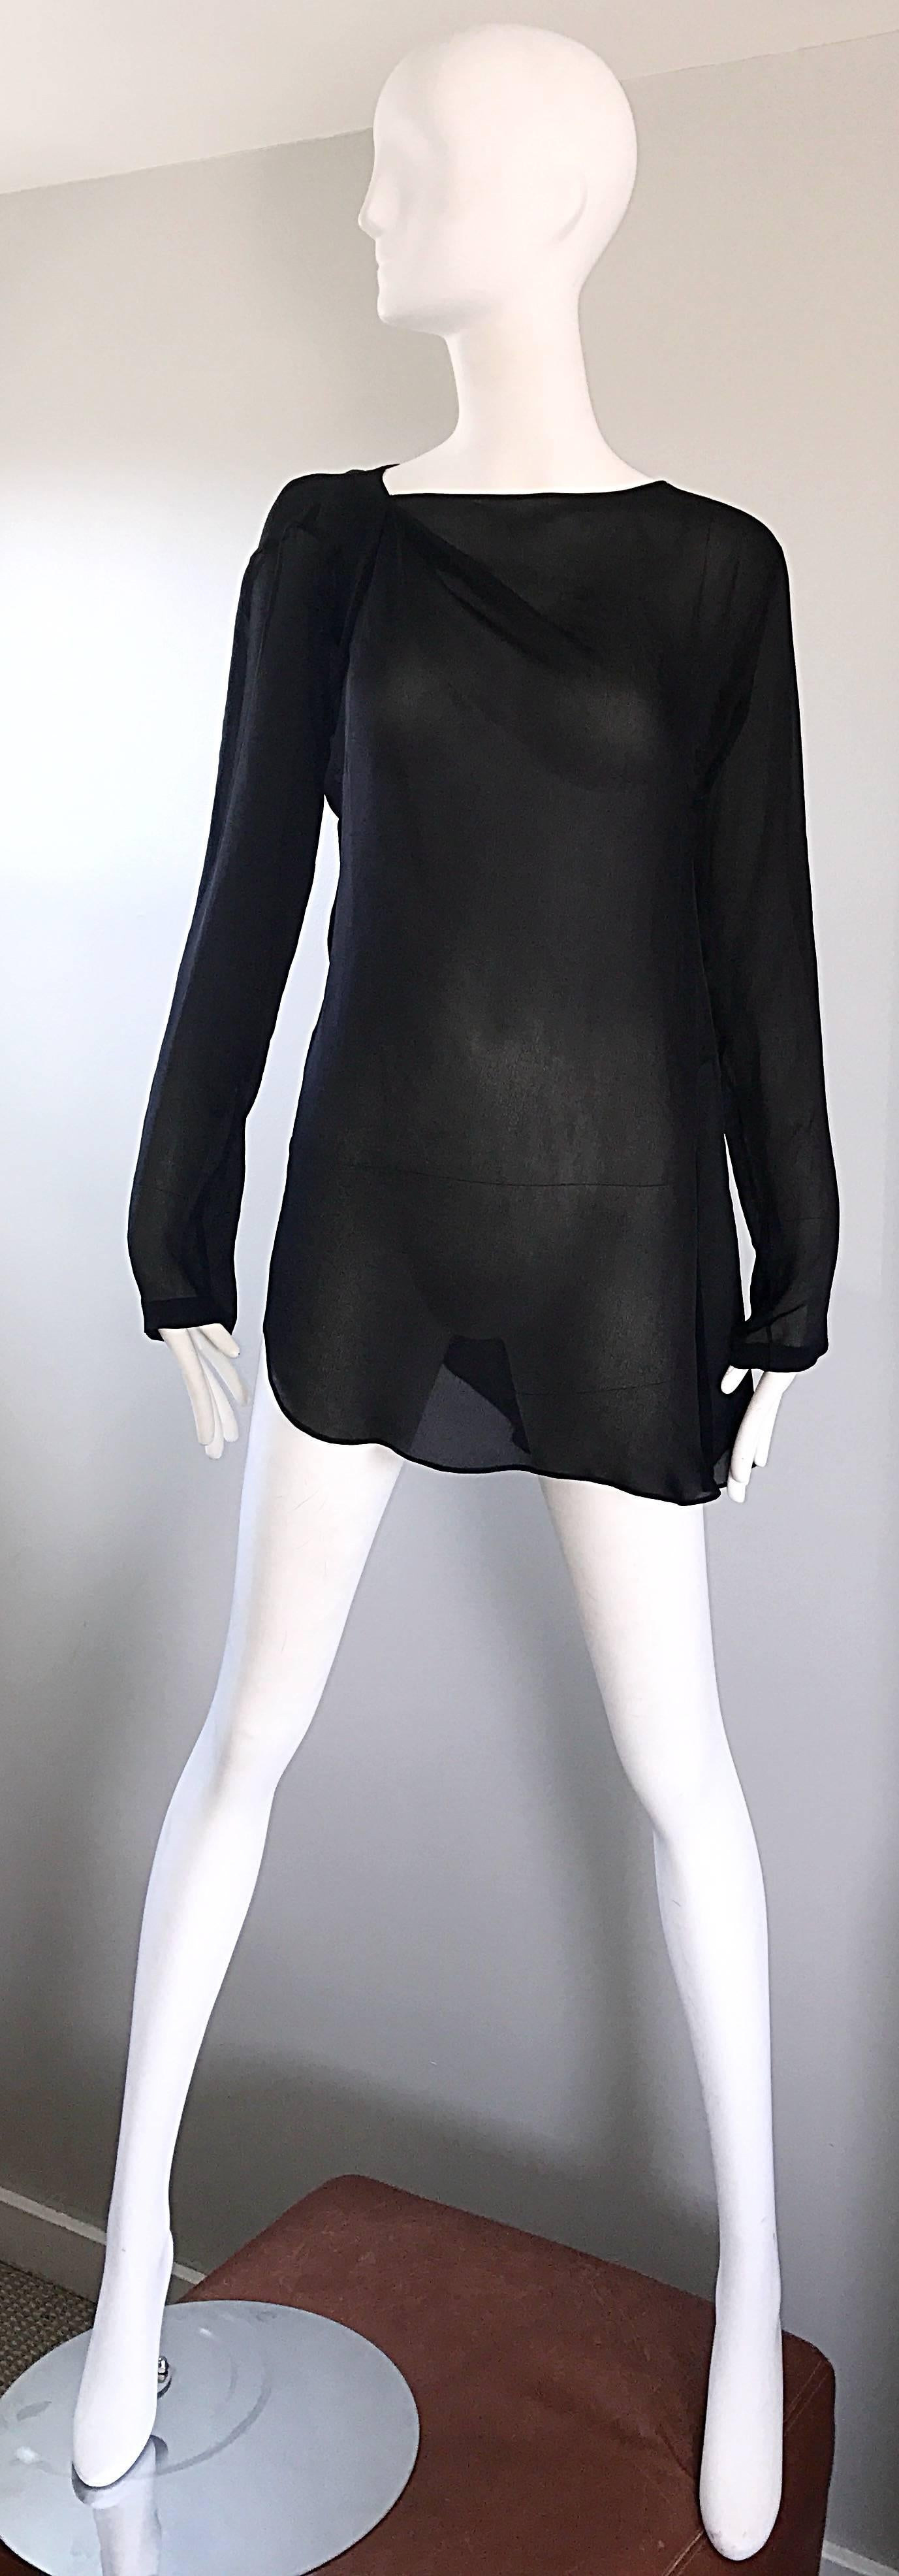 Vintage Halston Black Chiffon Black Semi Sheer Asymmetrical Tunic Top Blouse 3